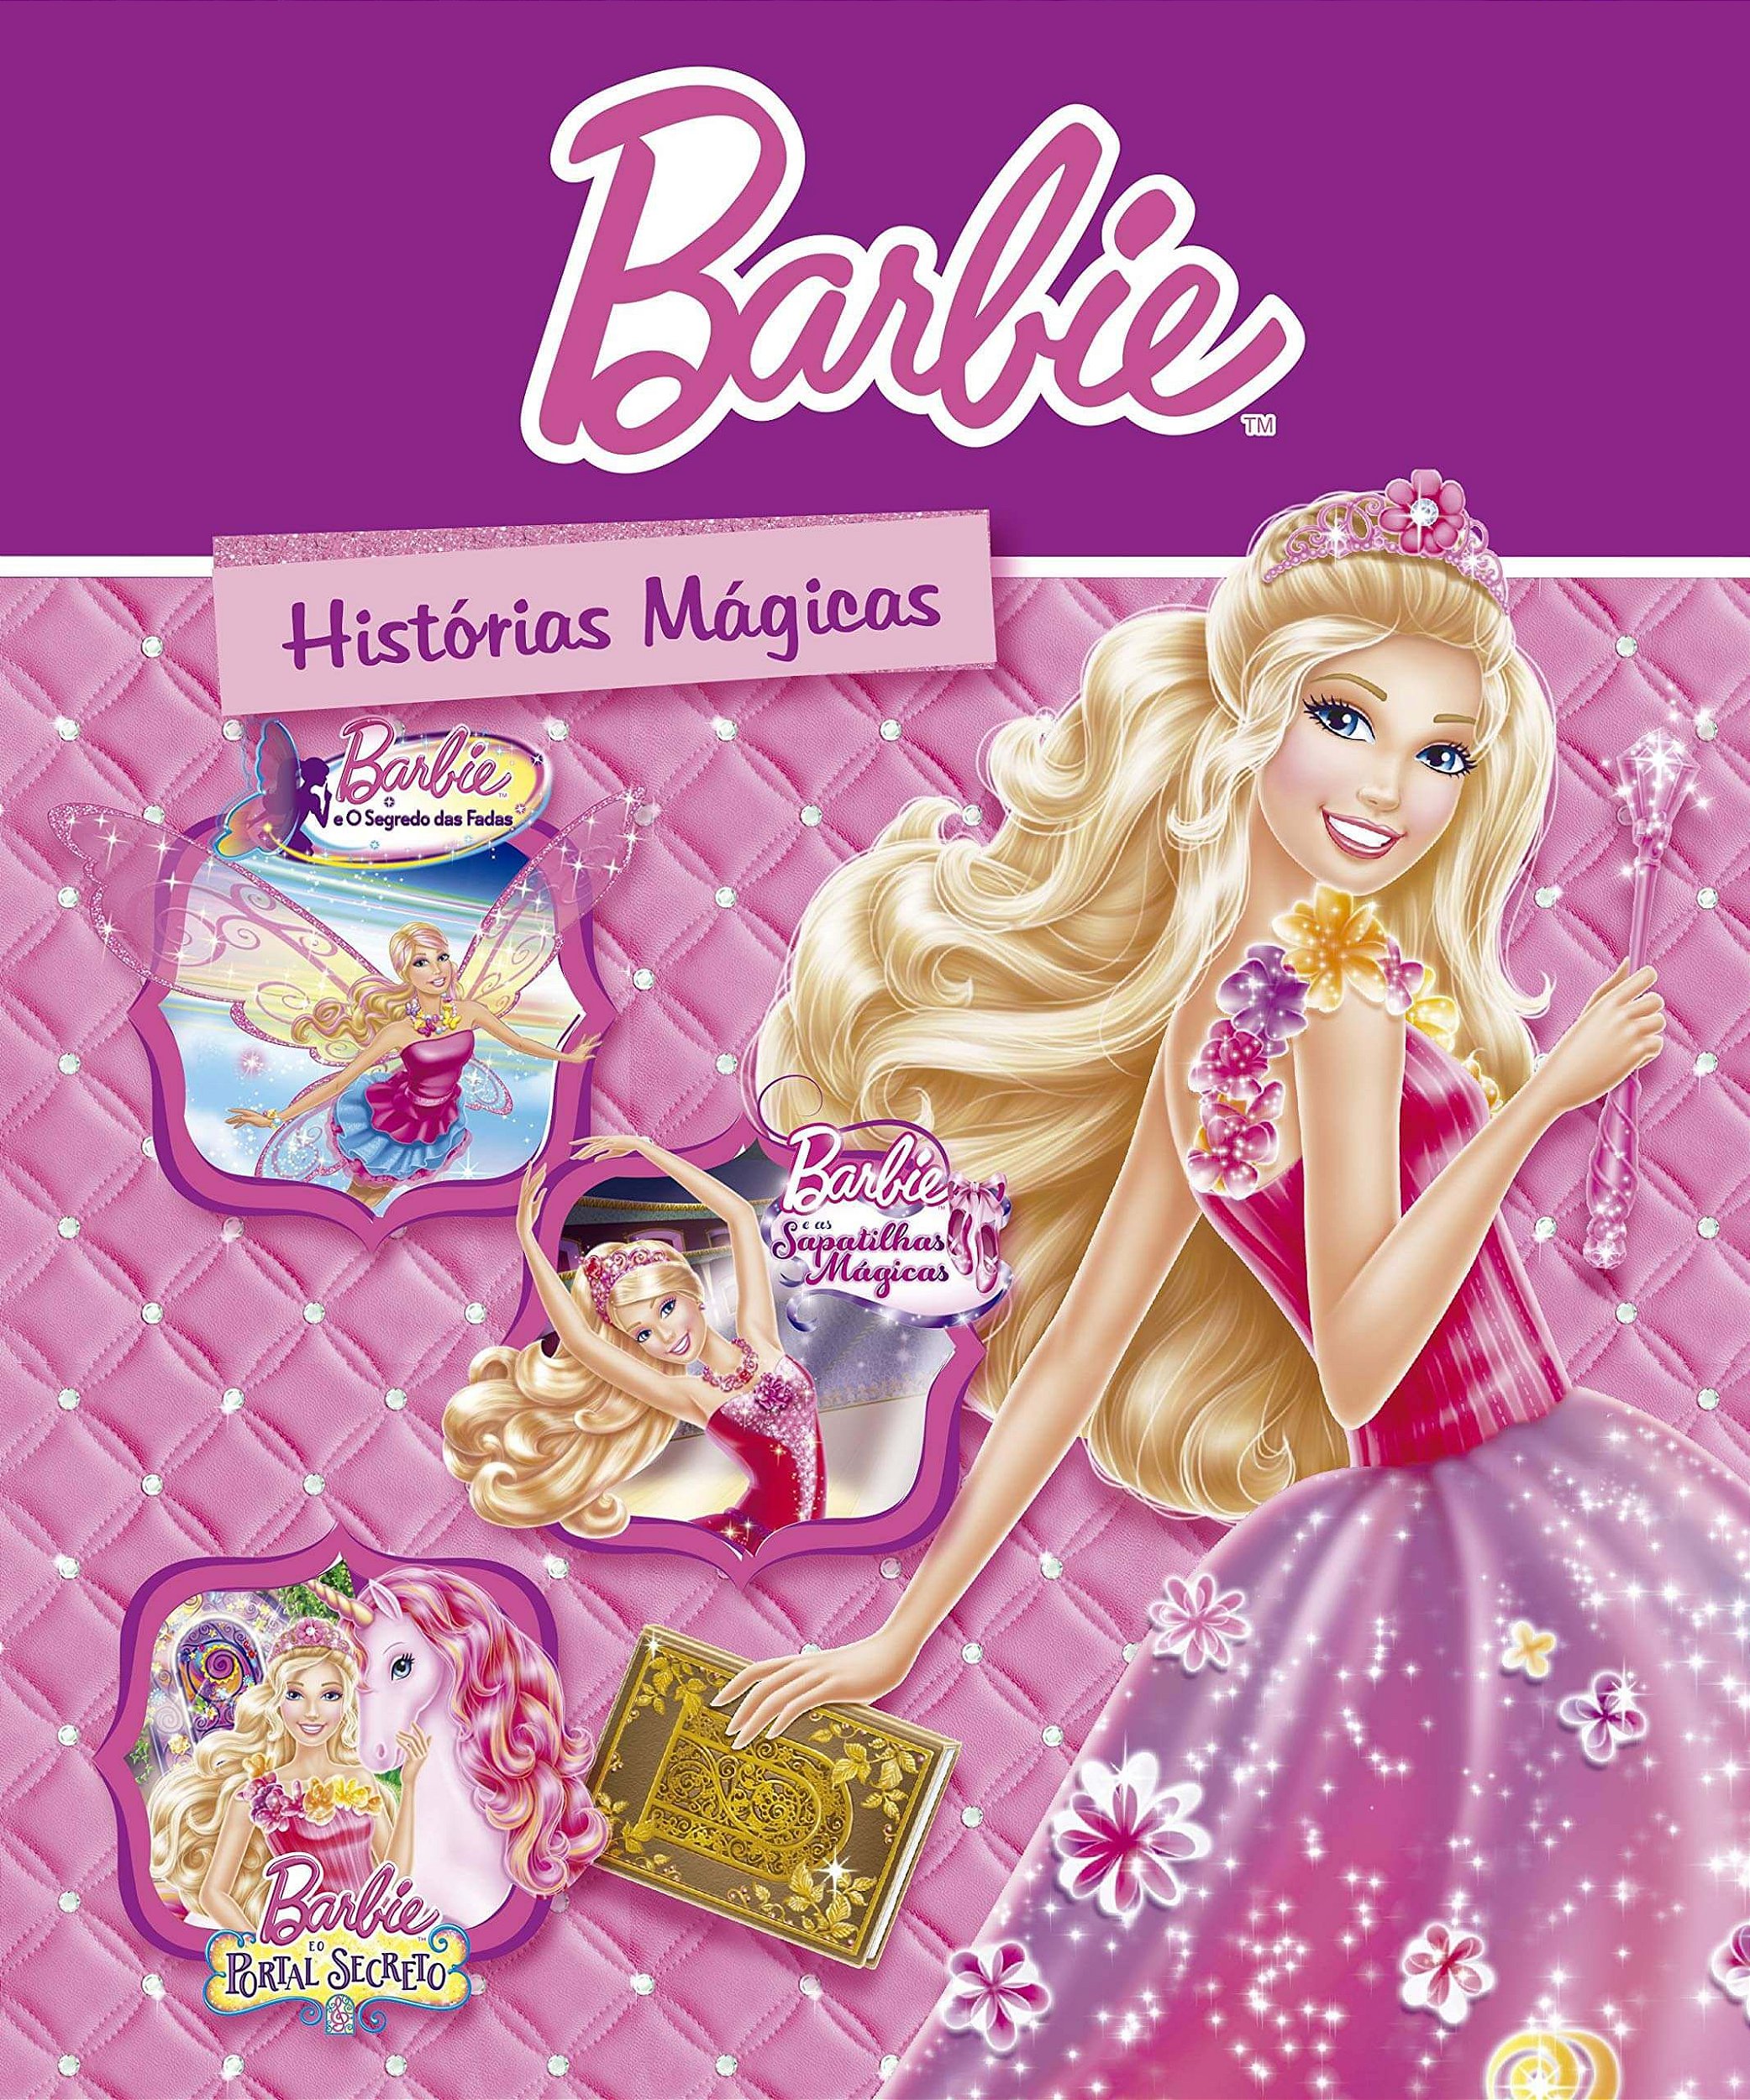 Barbie - 7 Erros (Barbie e o Segredo das Fadas) 